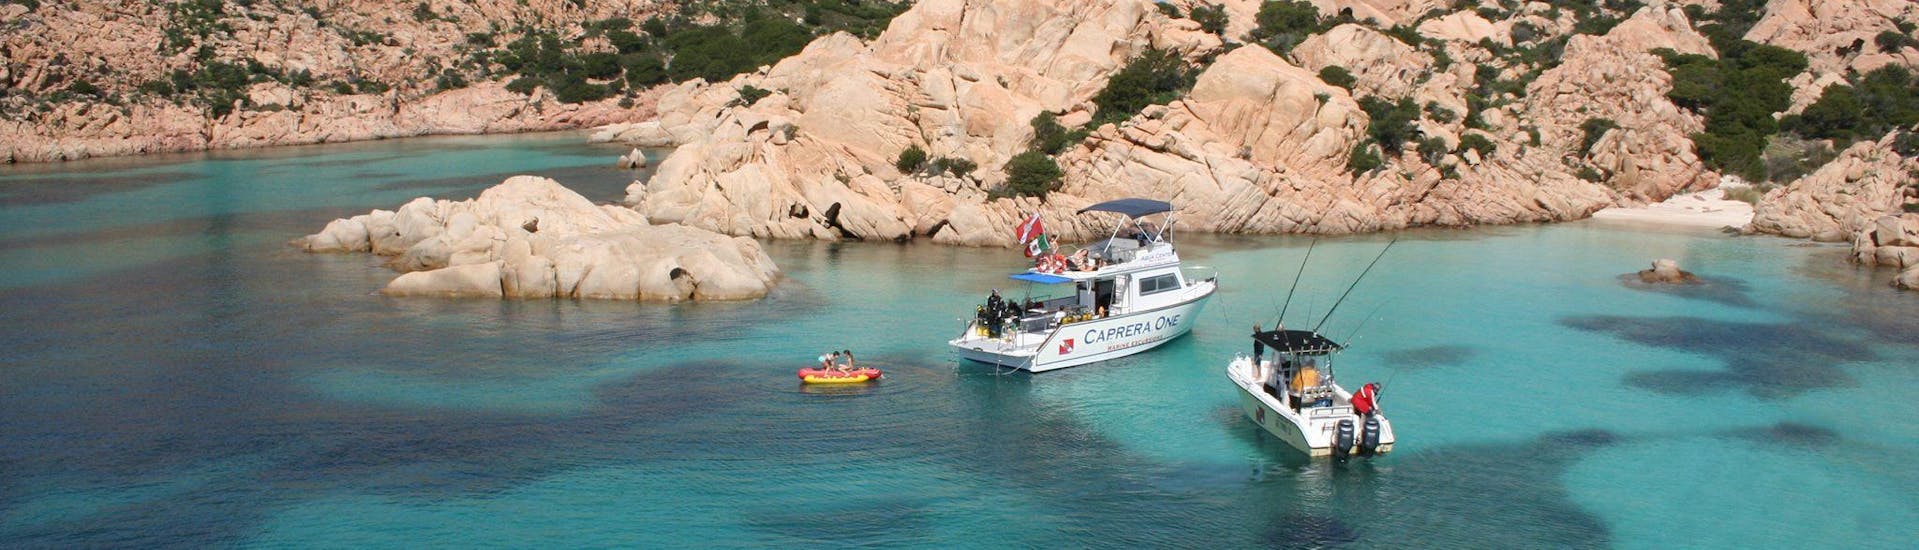 Giro in barca all'Isola di Caprera con soste snorkeling.